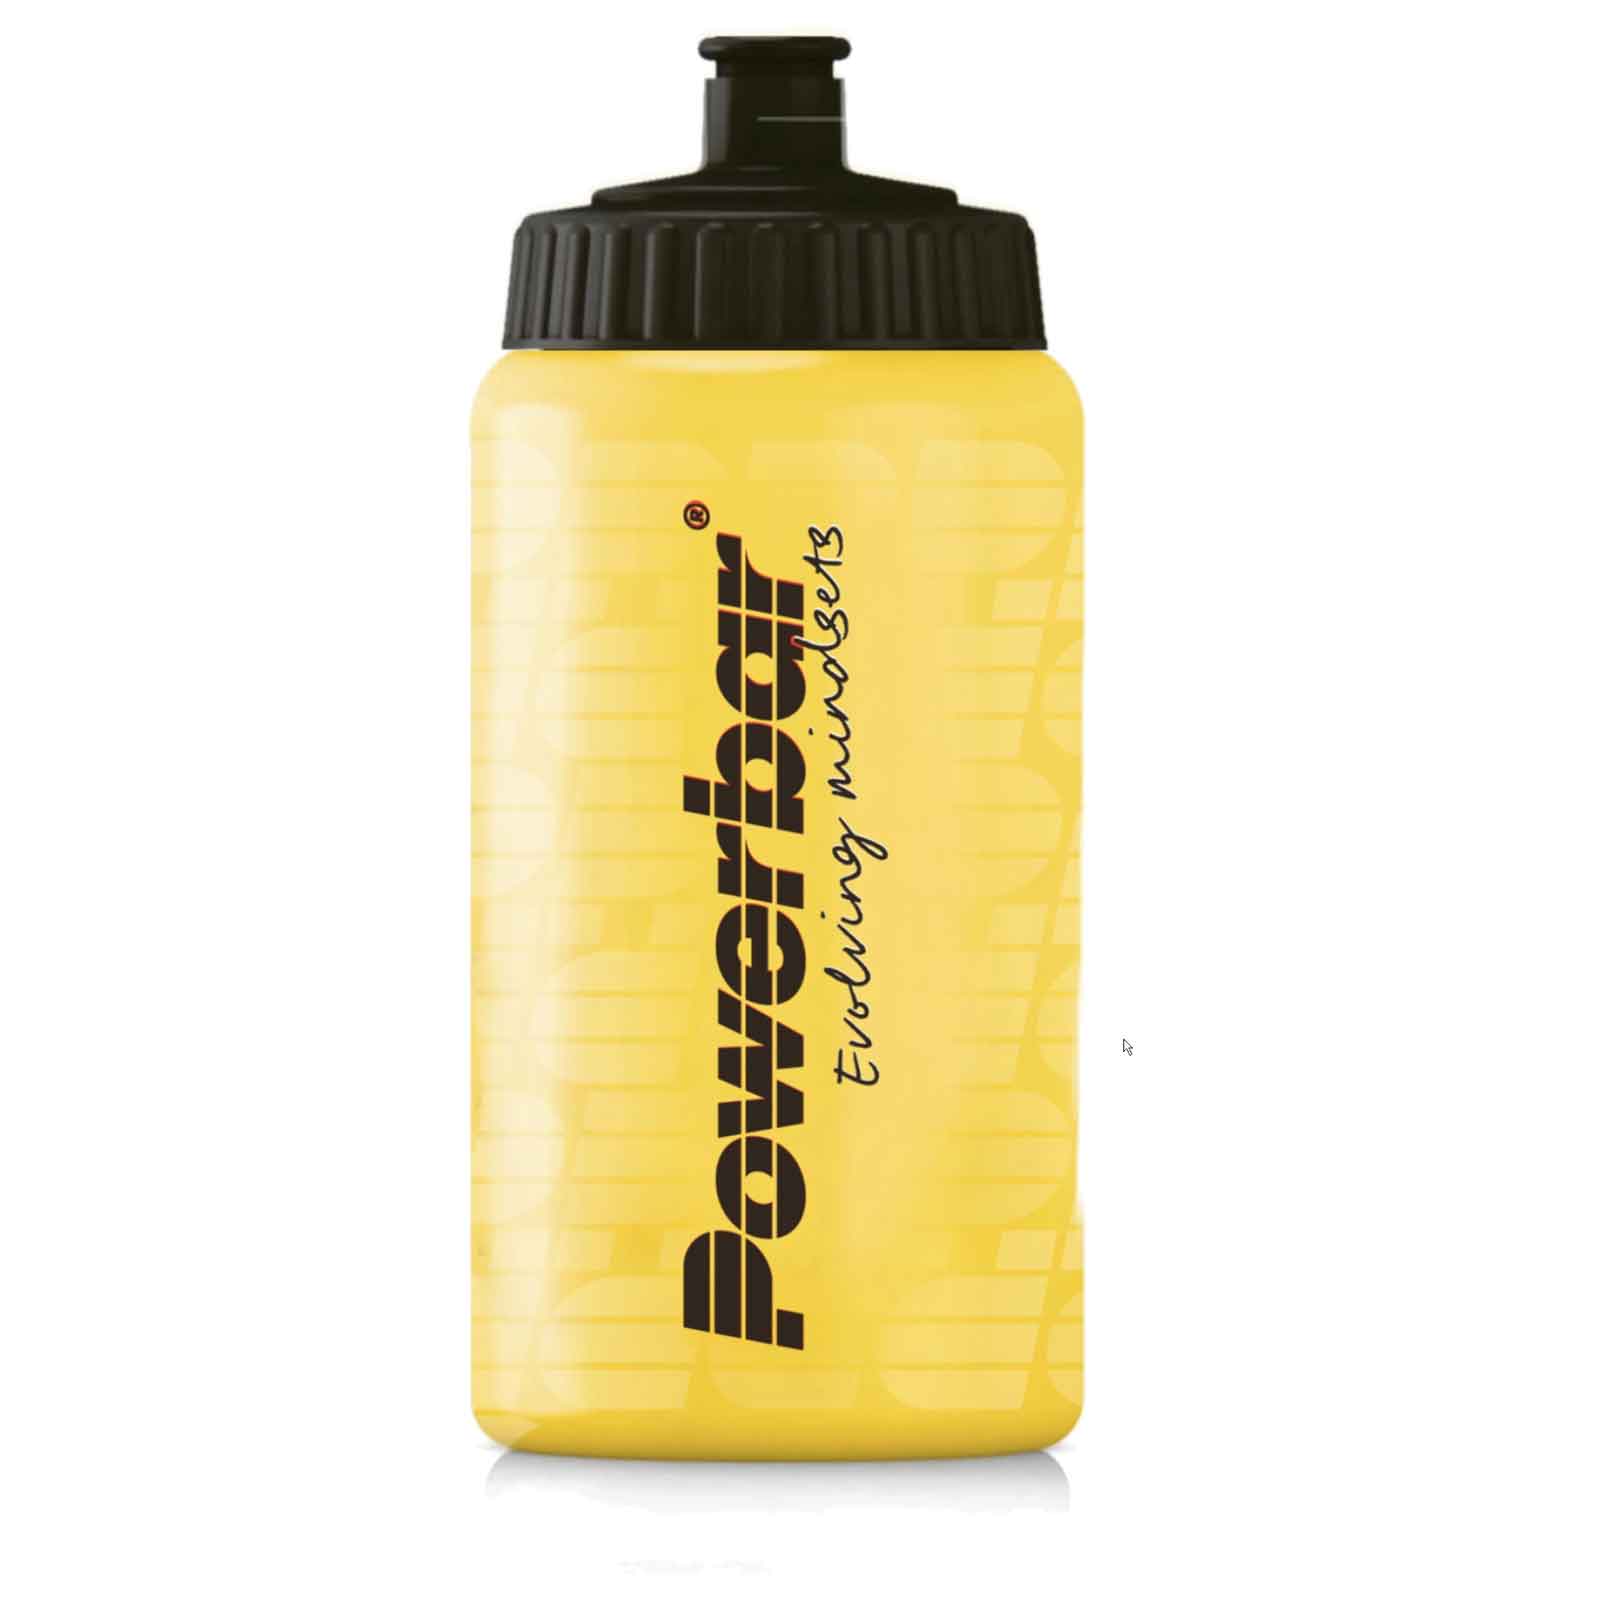 Produktbild von Powerbar Trinkflasche 500ml - gelb